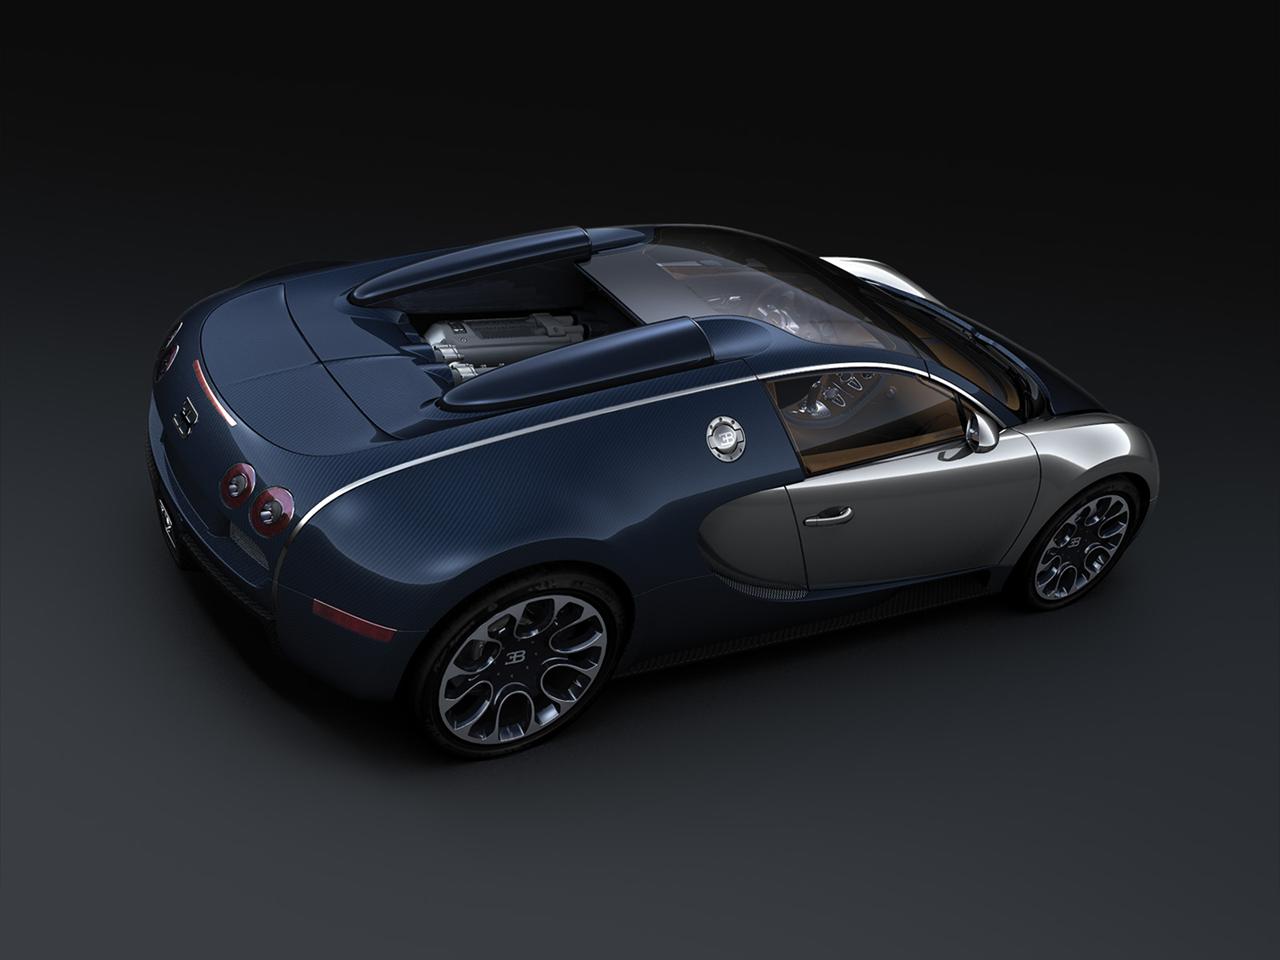 2009 Bugatti 16.4 Veyron Sang Bleu